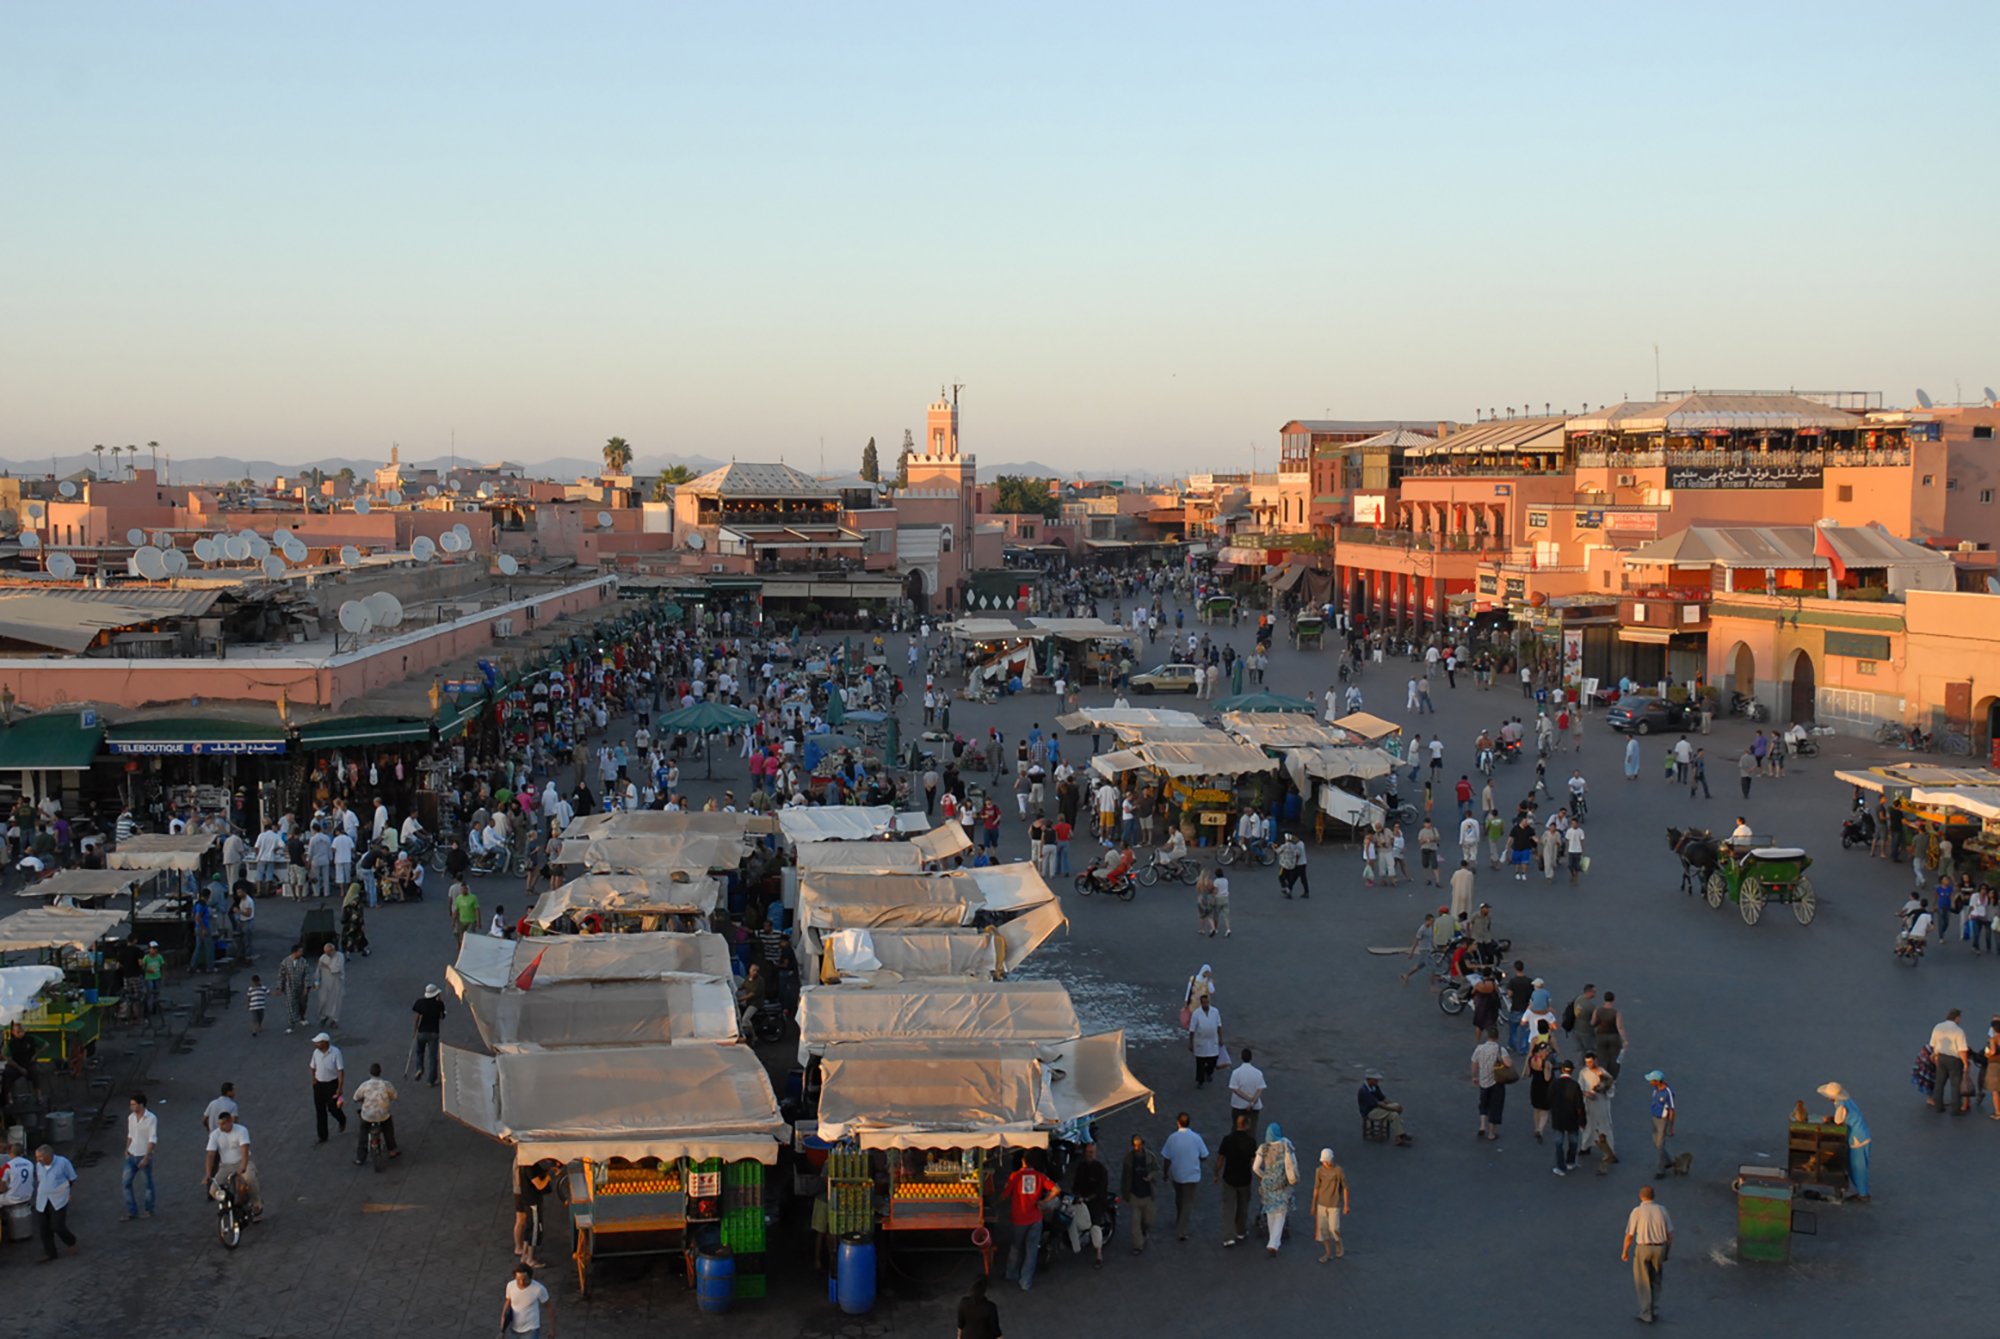 Het Jemaa El Fnaa-plein in de Medina van Marrakesh in betere tijden. (Foto: Burcak Pekin | CC/Flickr.com)